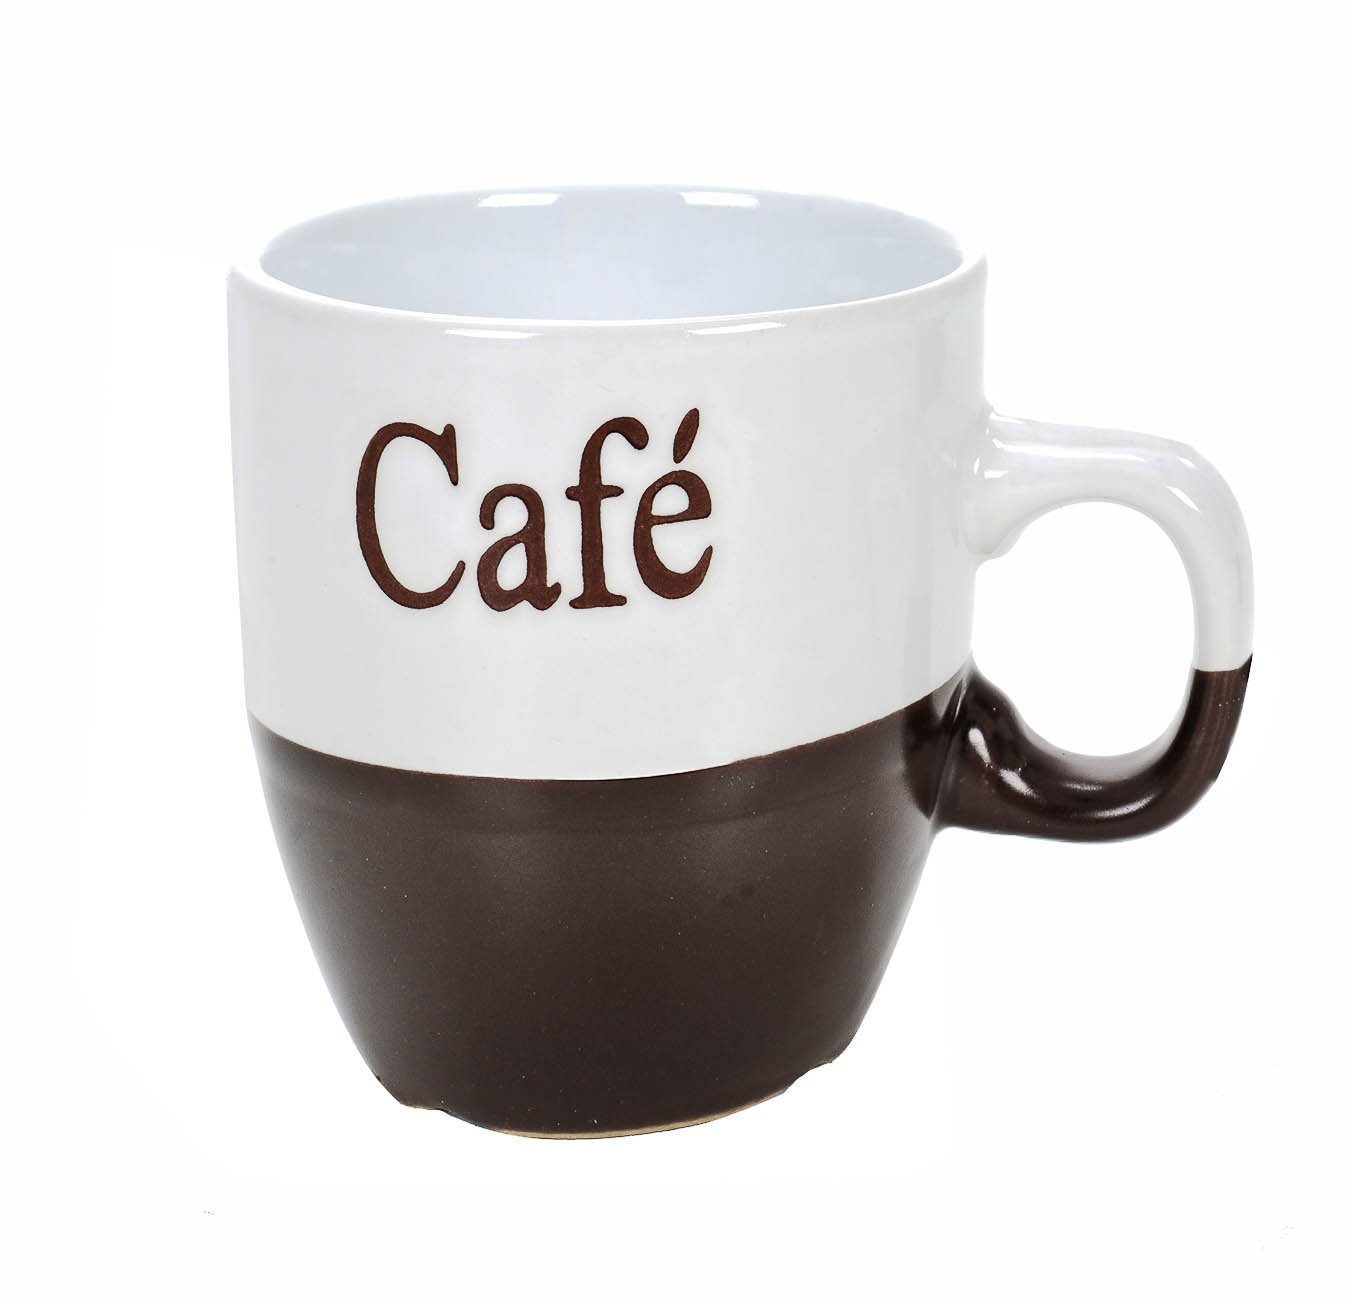 Kaffeetasse, 2-er Café mit Aufschrift Espresso, Aufschrift Bubble-Store braun/weiß Keramik, für Set Café Kaffeetassen, Cappuccinotasse Espressotasse, Keramik-Tassen